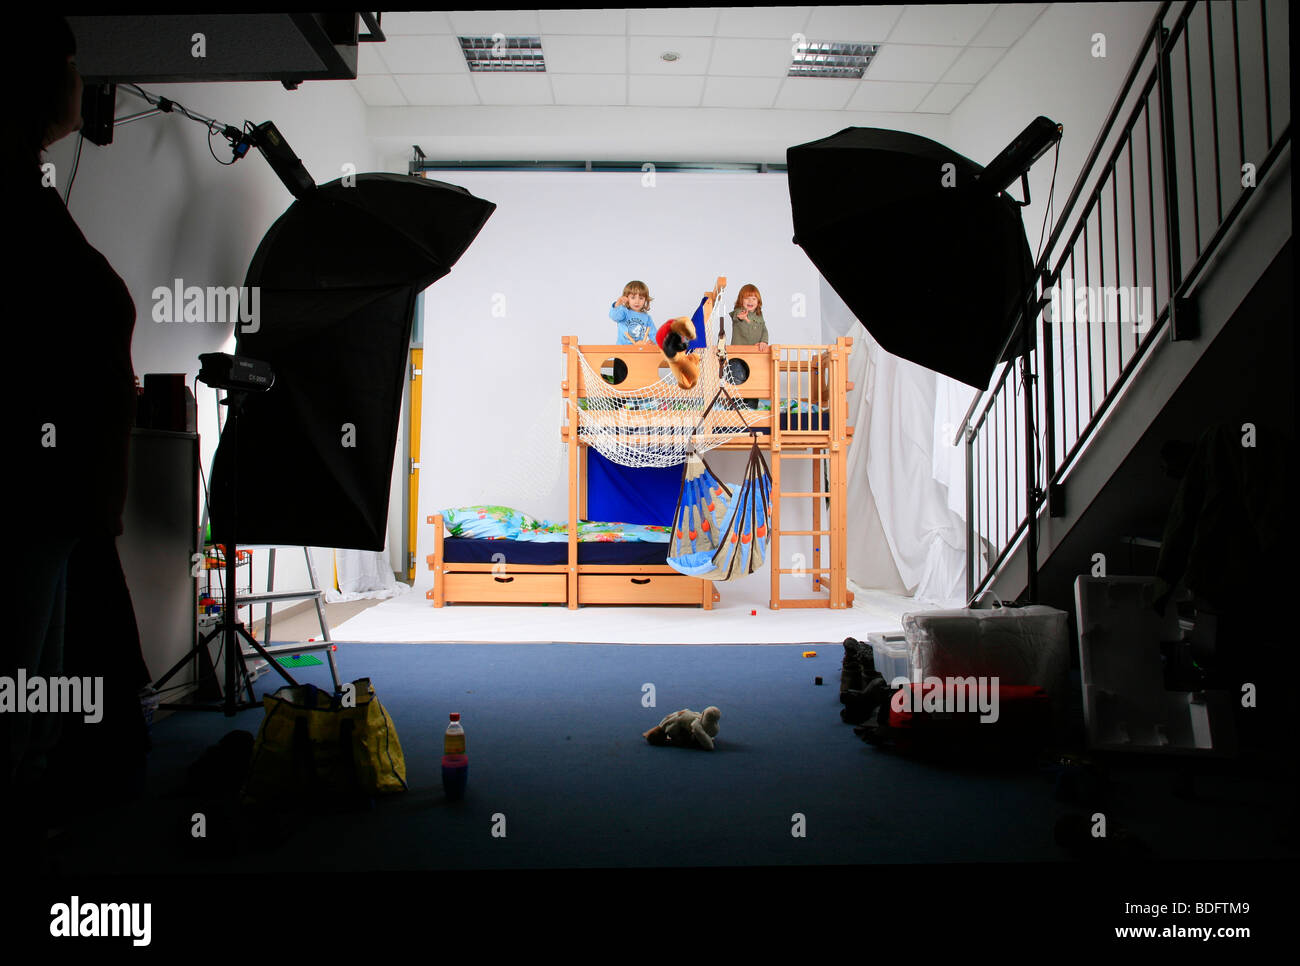 Kinder spielen in ein Billi-Bolli Hochbett in einem Fotostudio Stockfoto